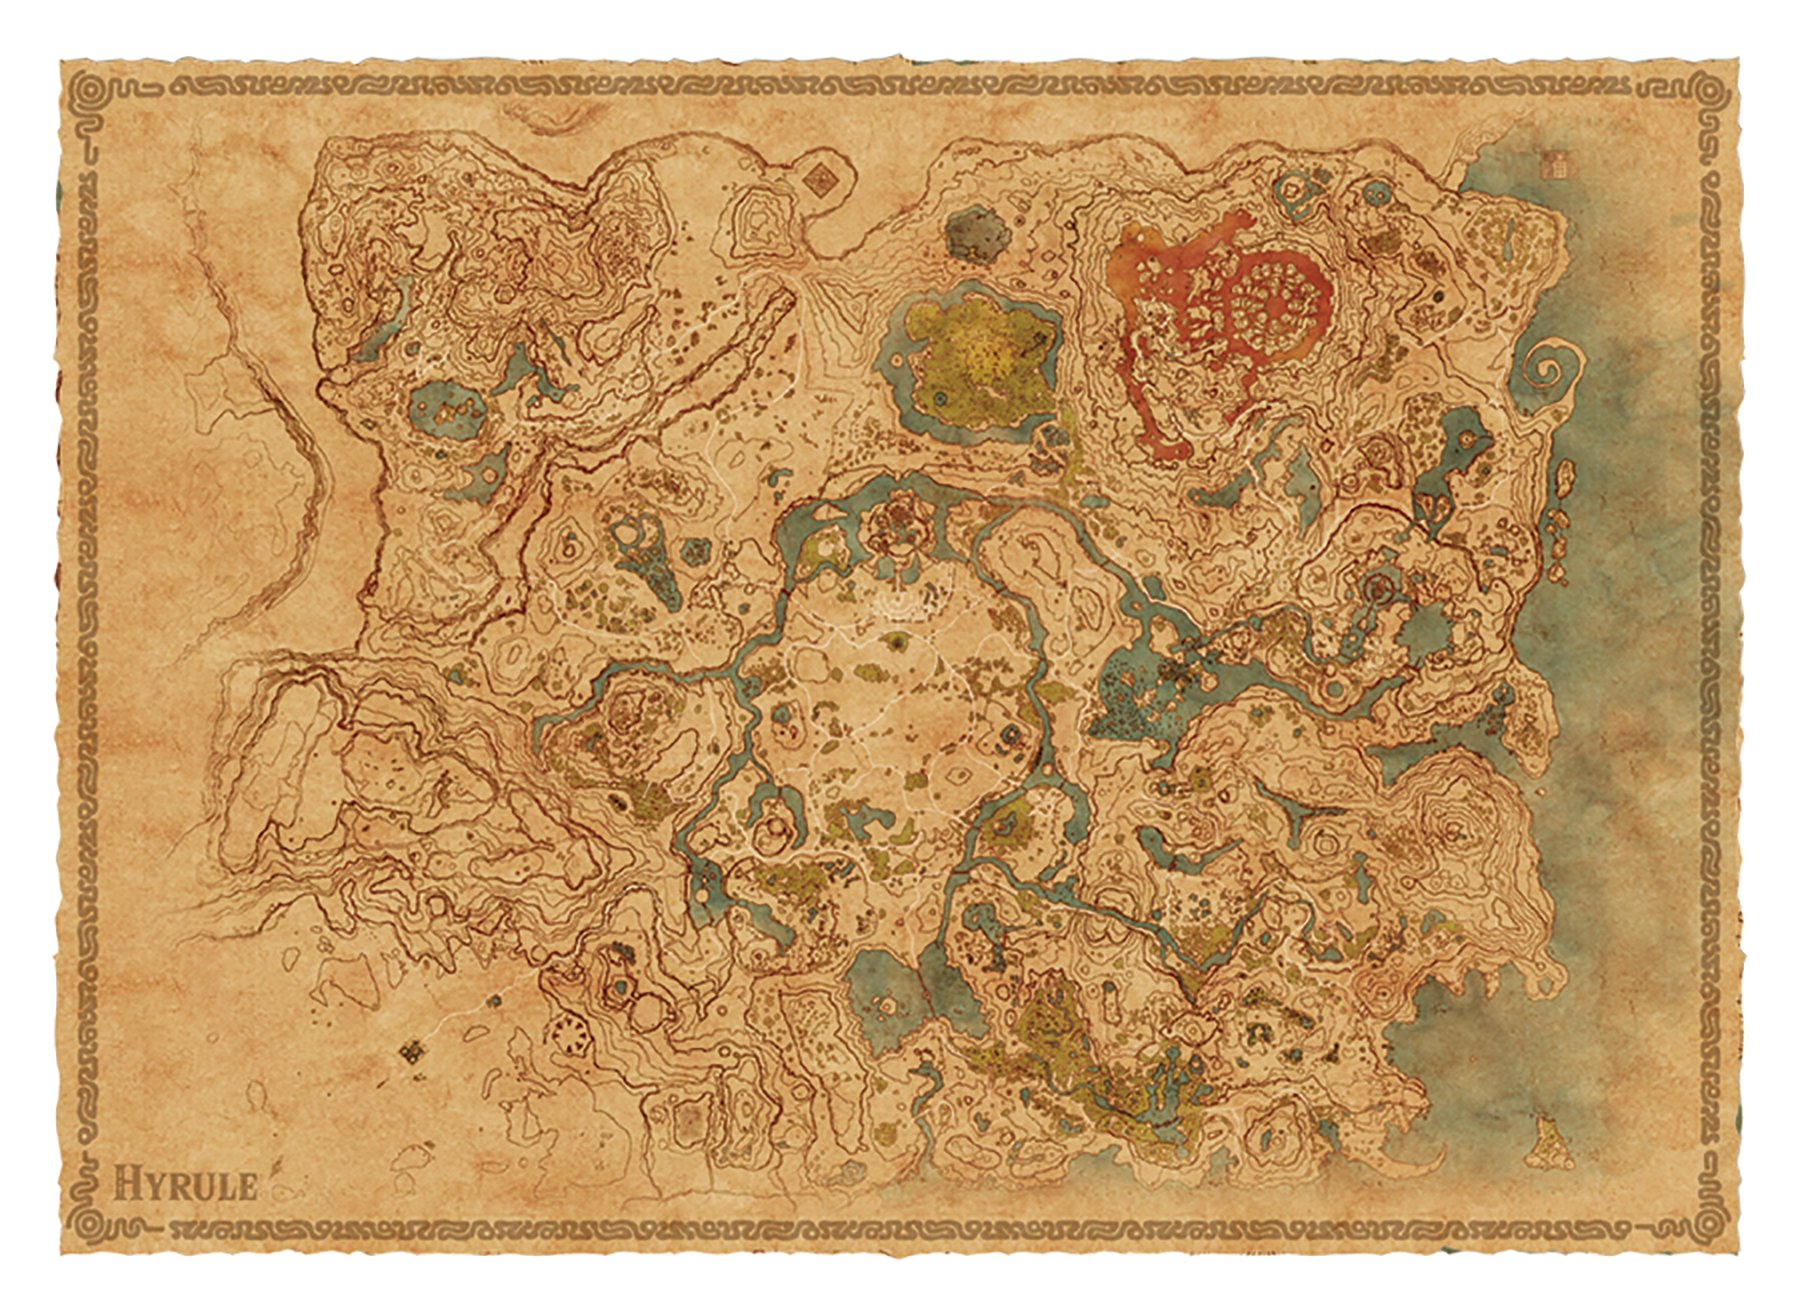 Legend Of Zelda Breath Of The Wild Explorer's Guide - HD Wallpaper 